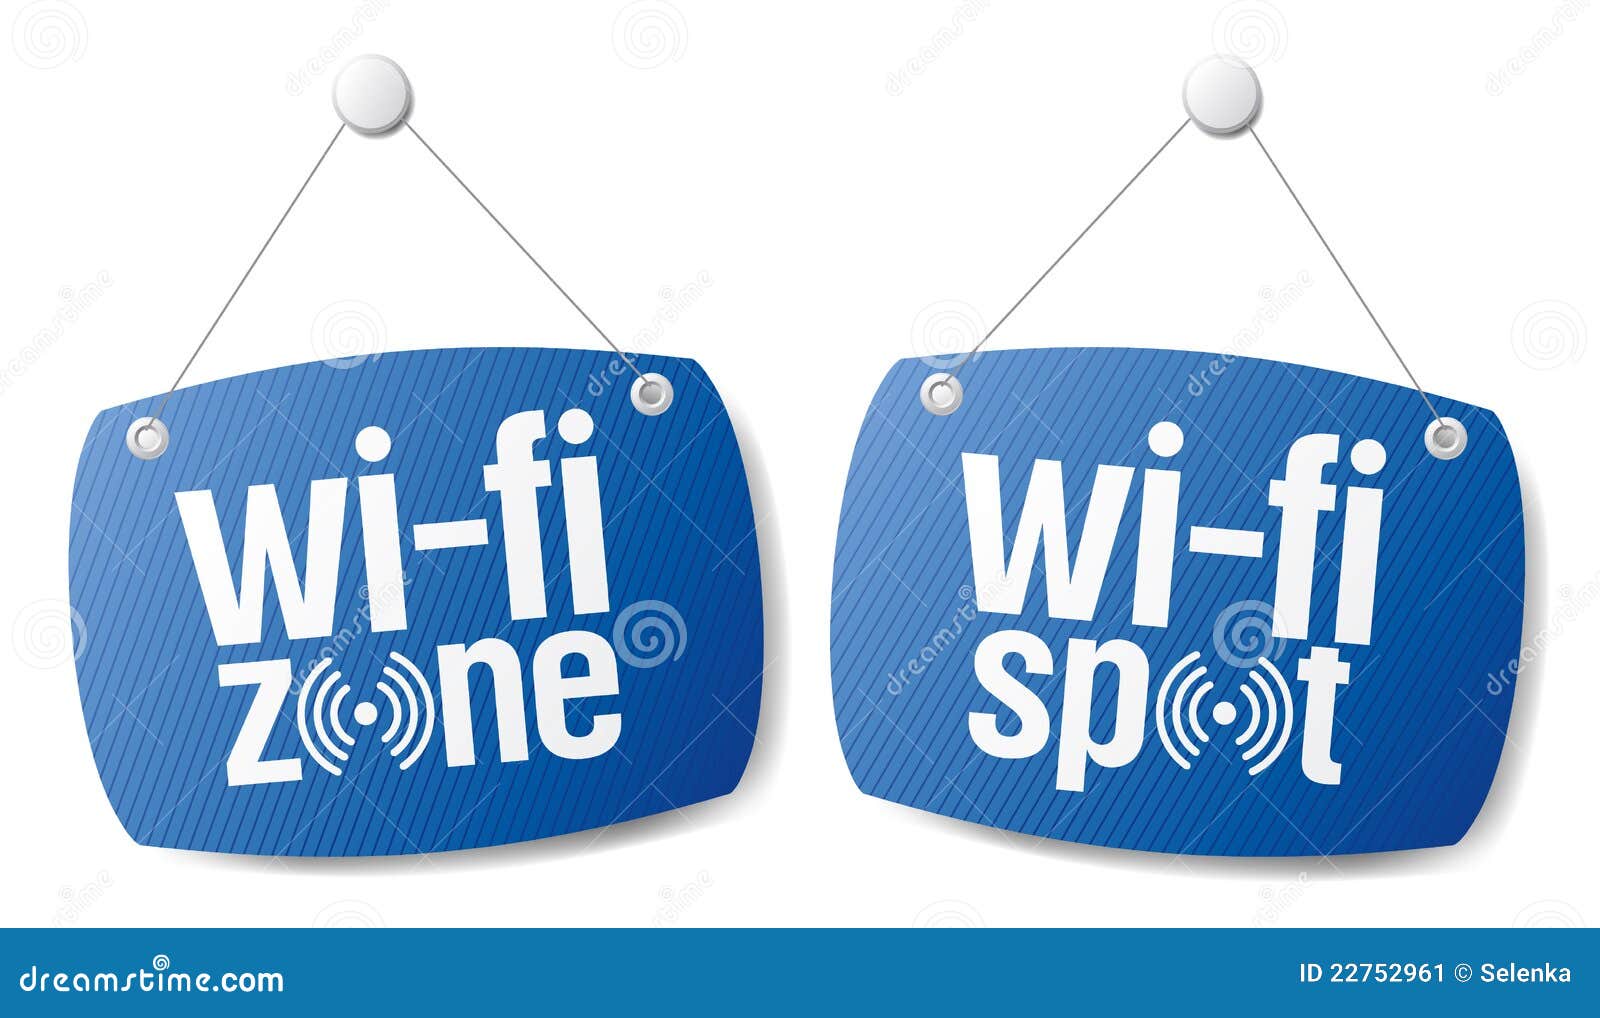 wi-fi internet signal signs.